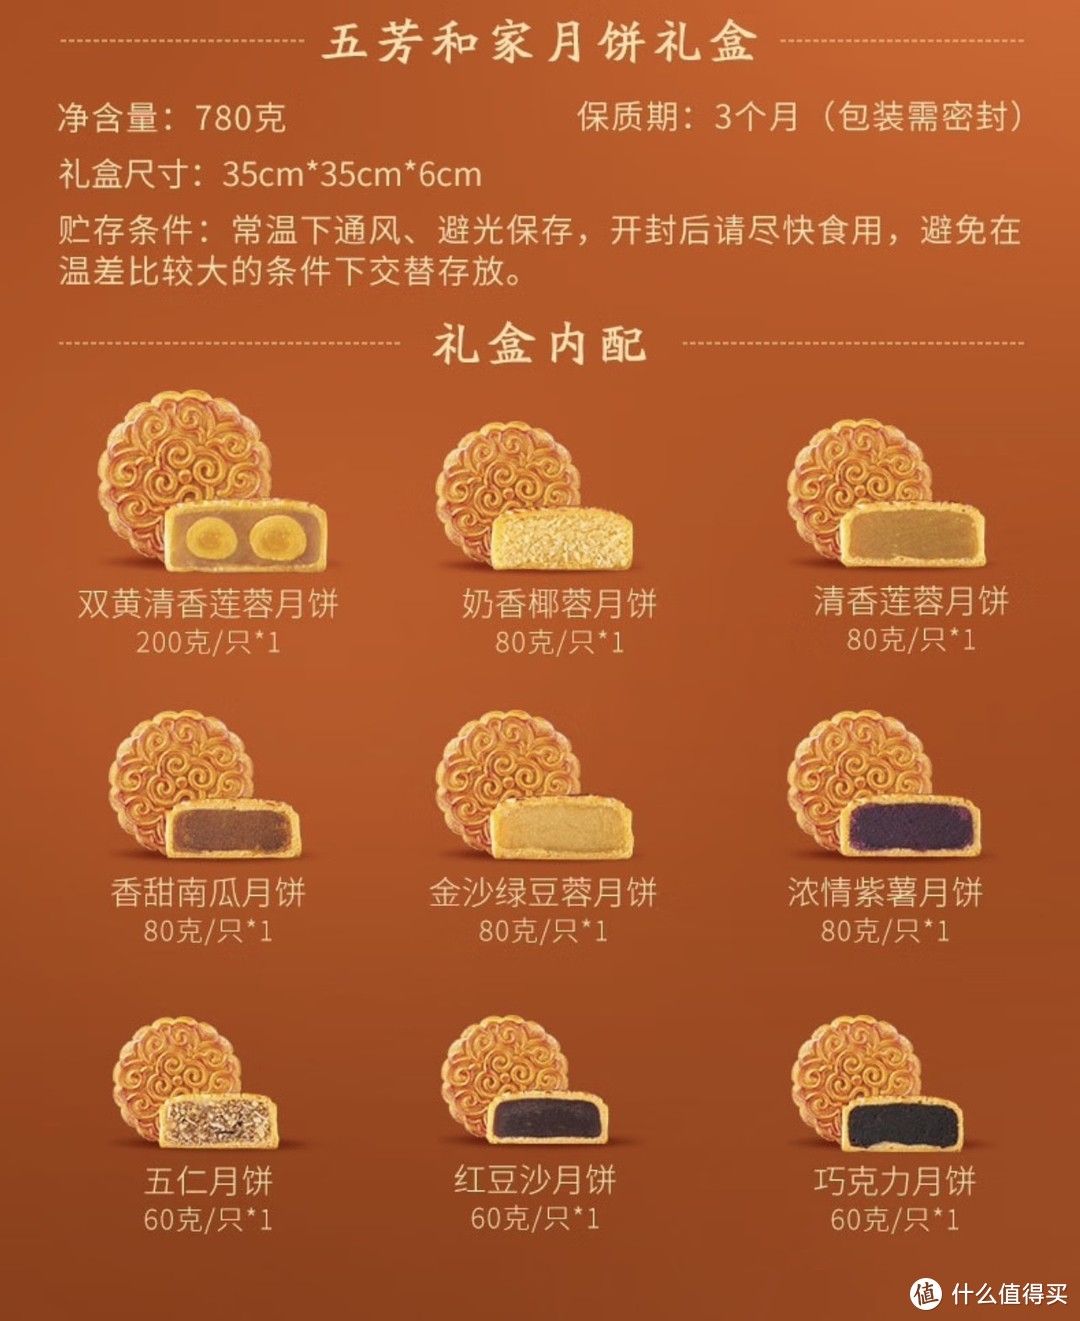 中秋节的习俗“吃月饼，赏月”